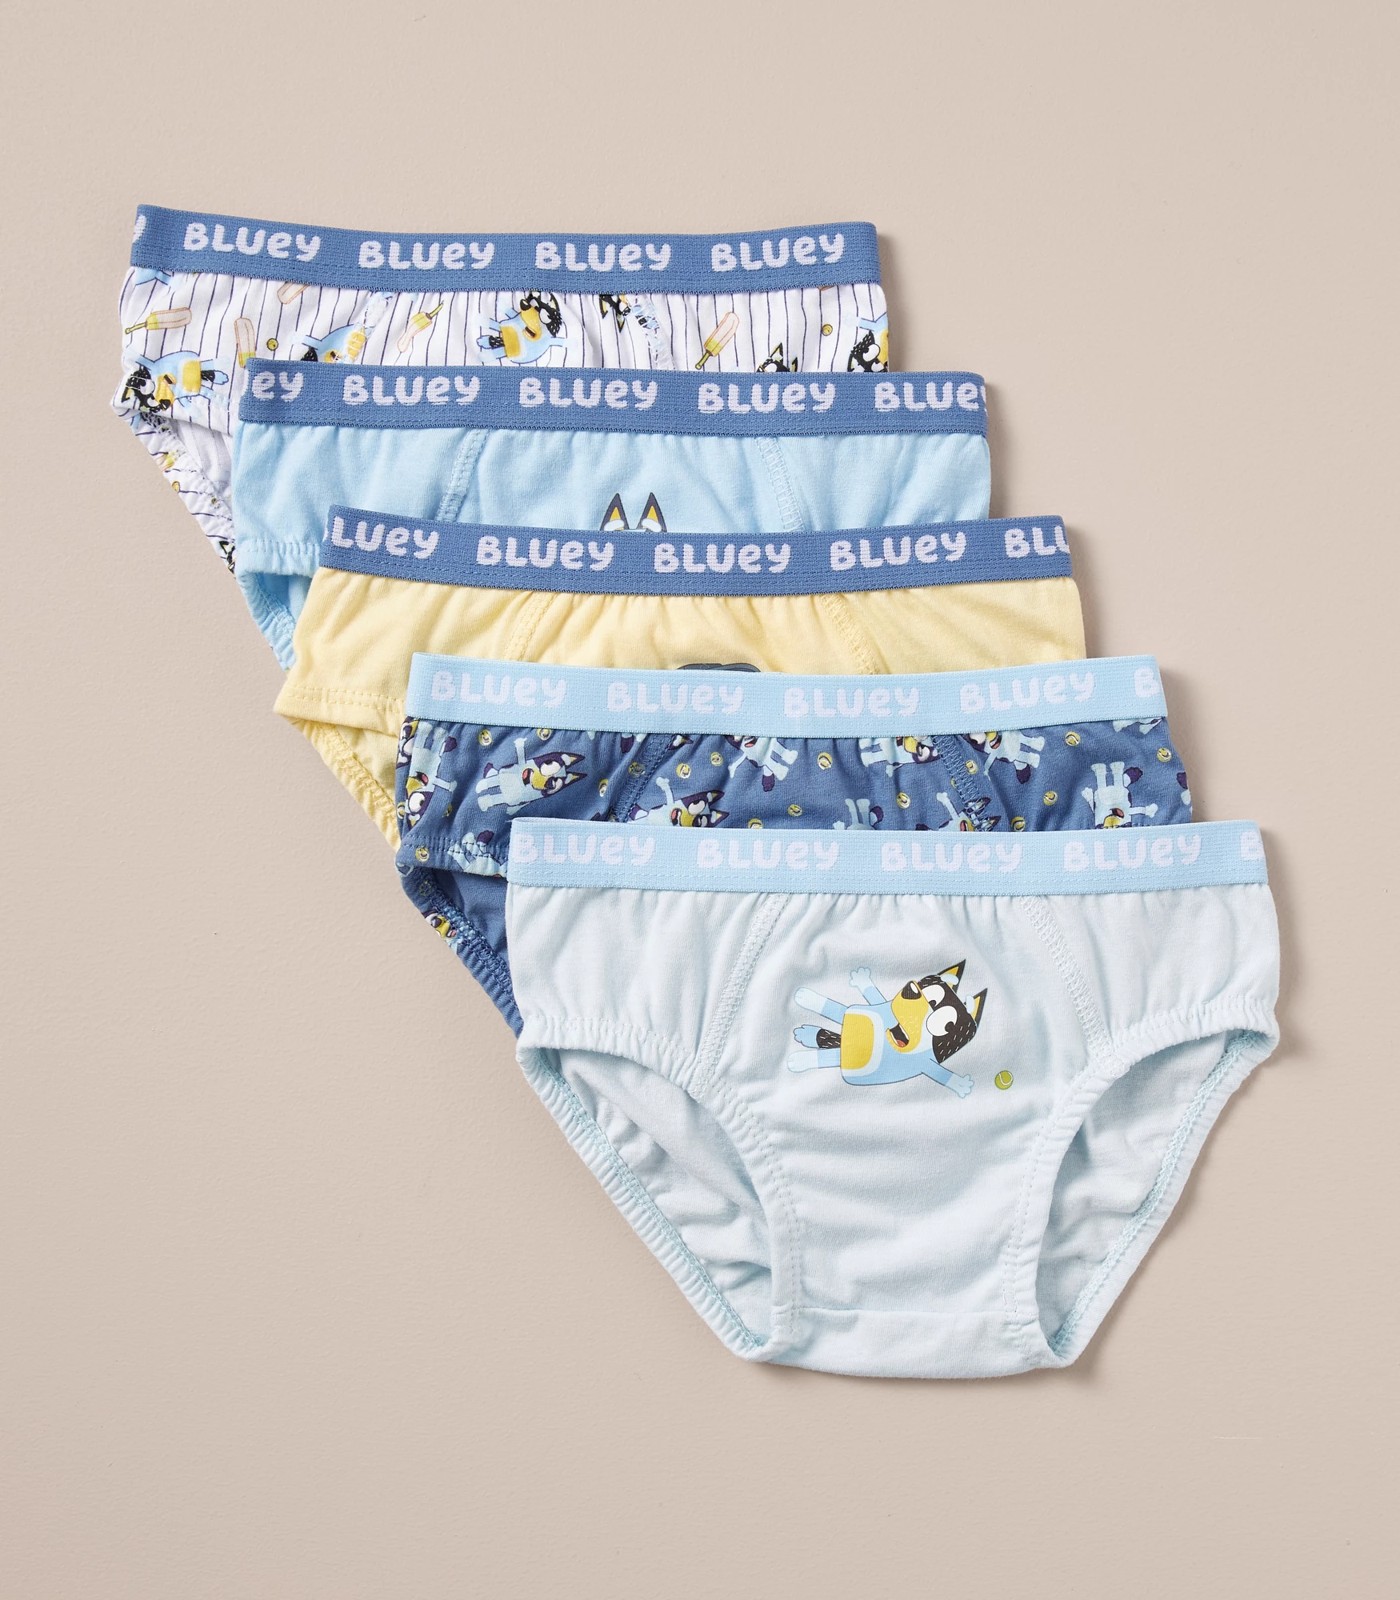 Bluey Underwear 5 Pack, Kids